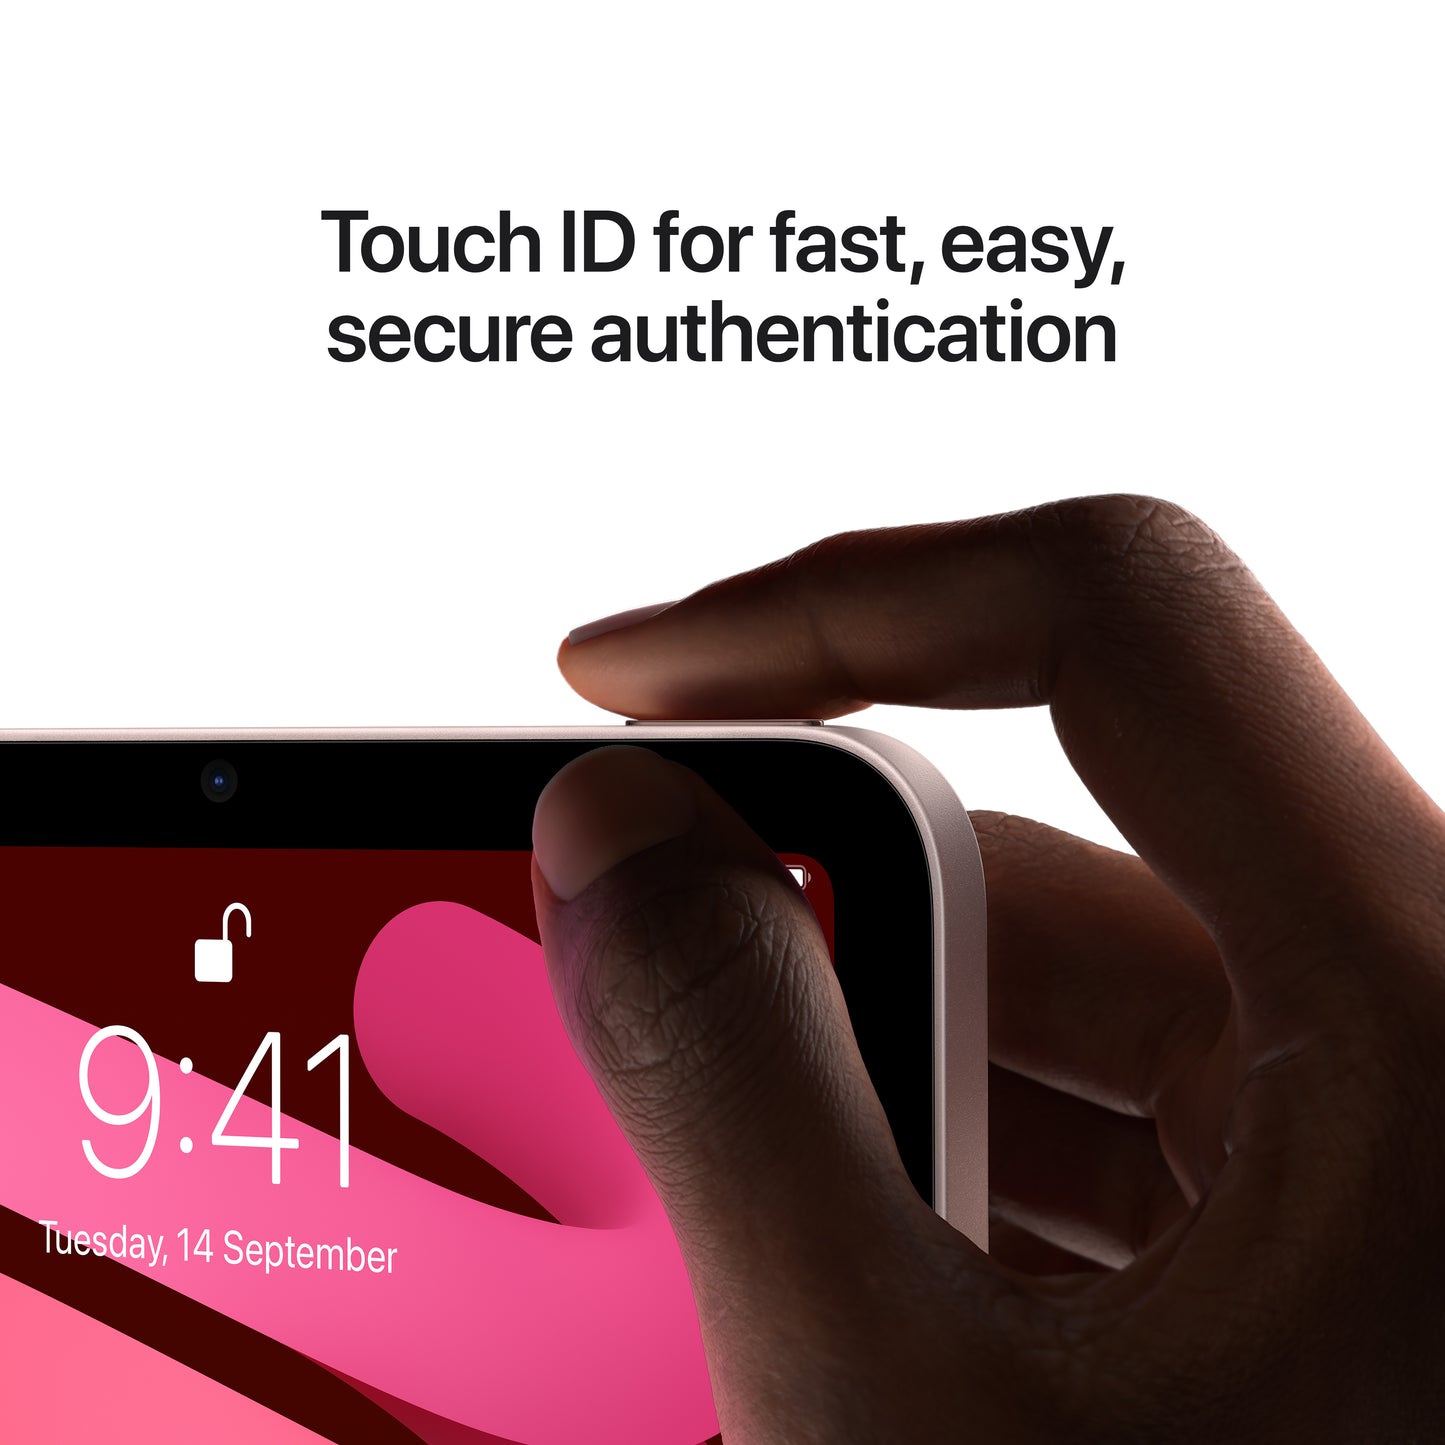 Apple iPad mini (6th Gen) Wi-Fi 256GB Pink